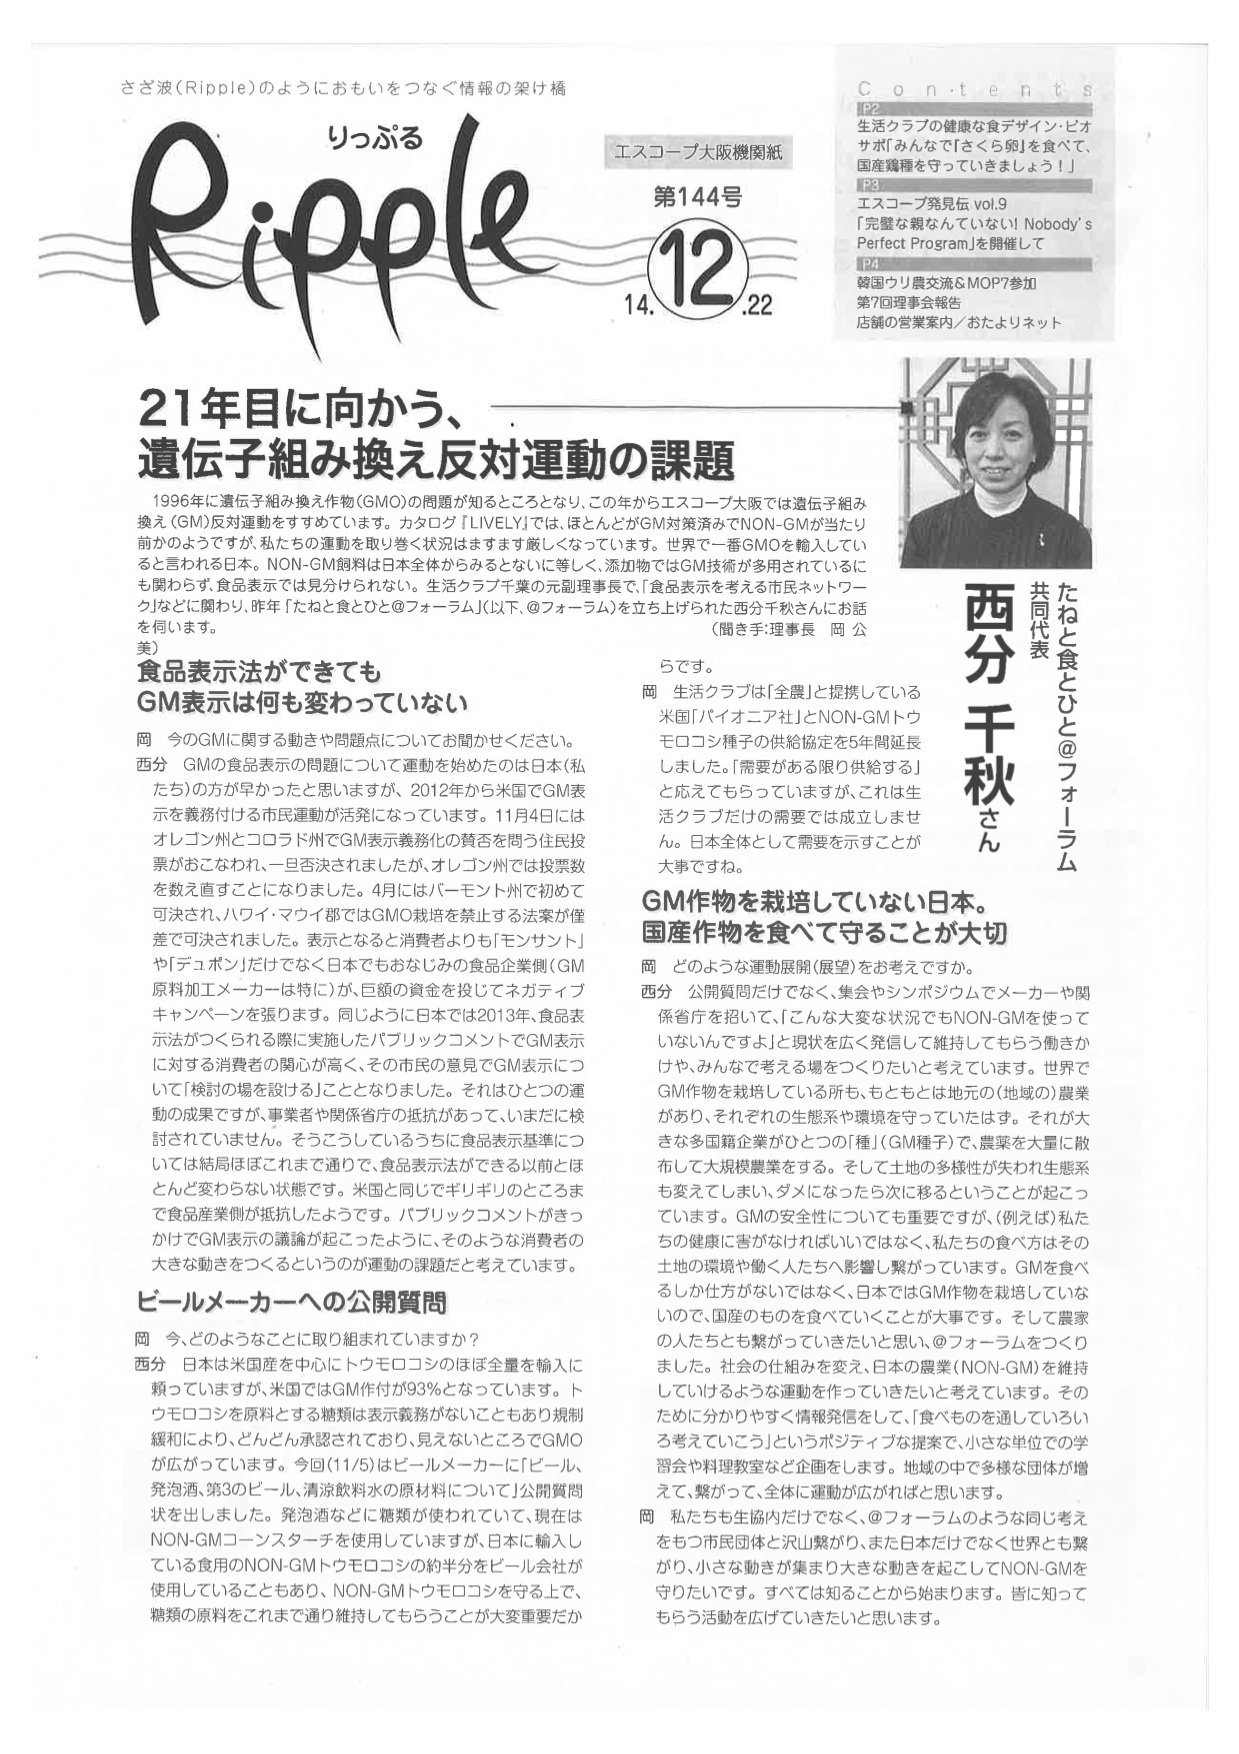 20141222 エスコープ大阪機関紙